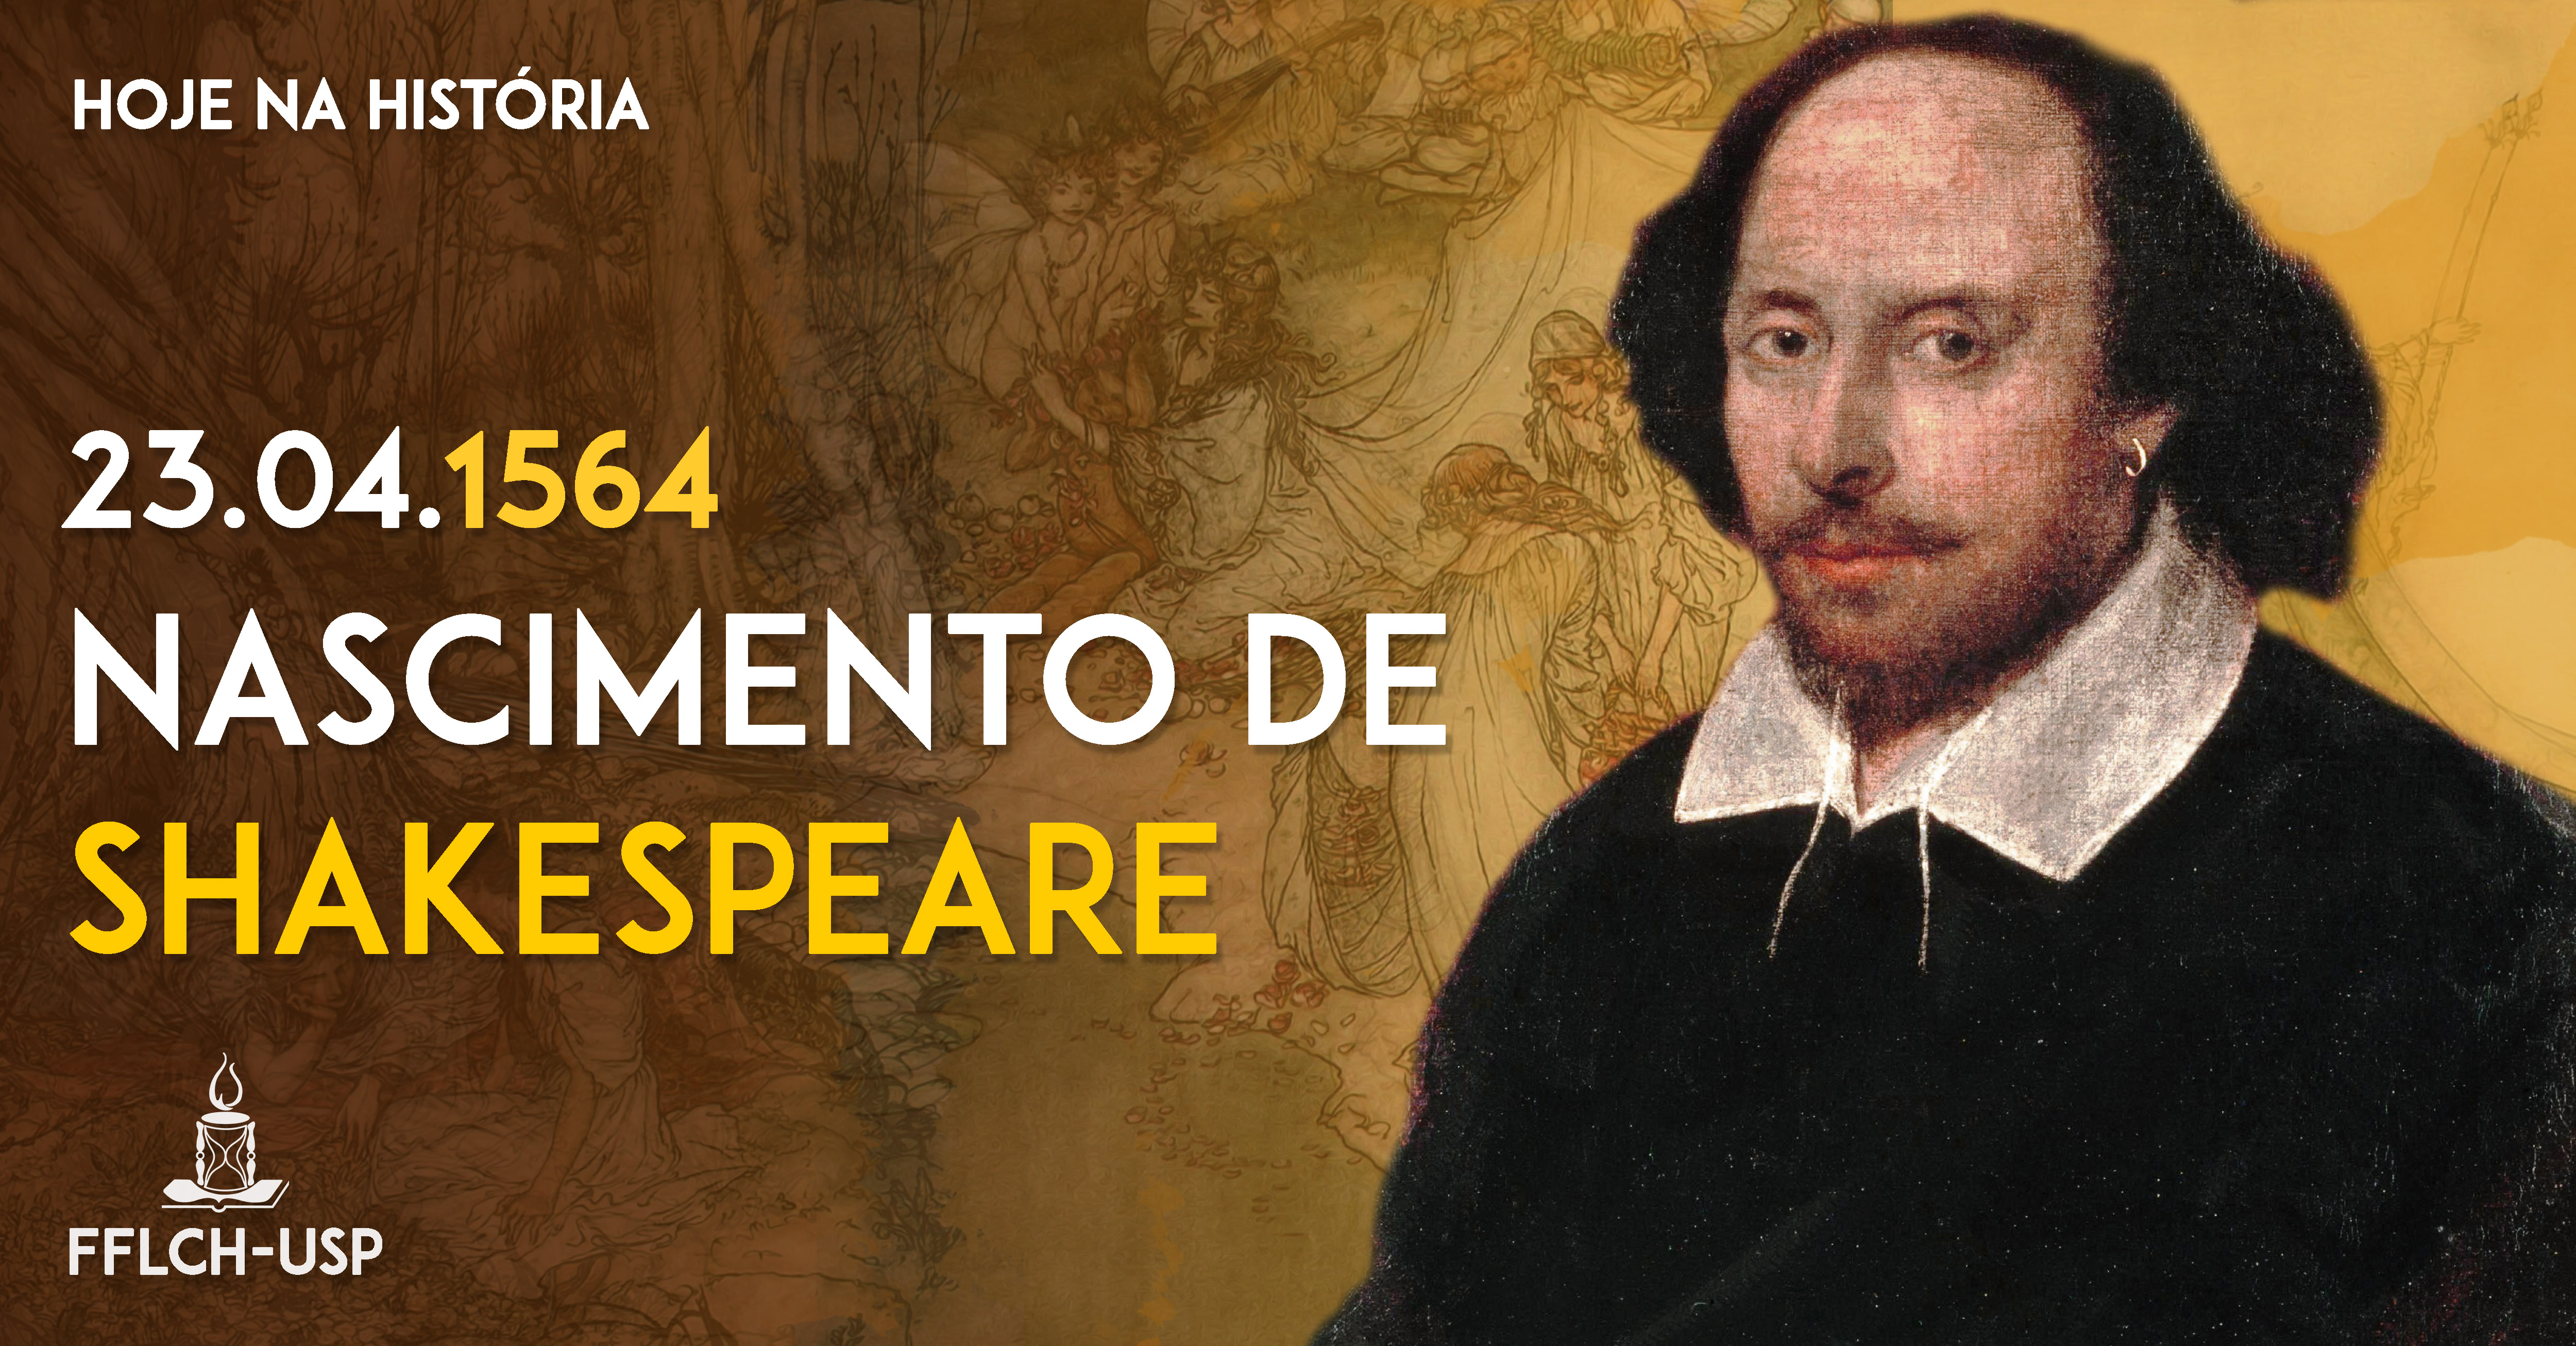 Nascimento de William Shakespeare em 23 de abril de 1564